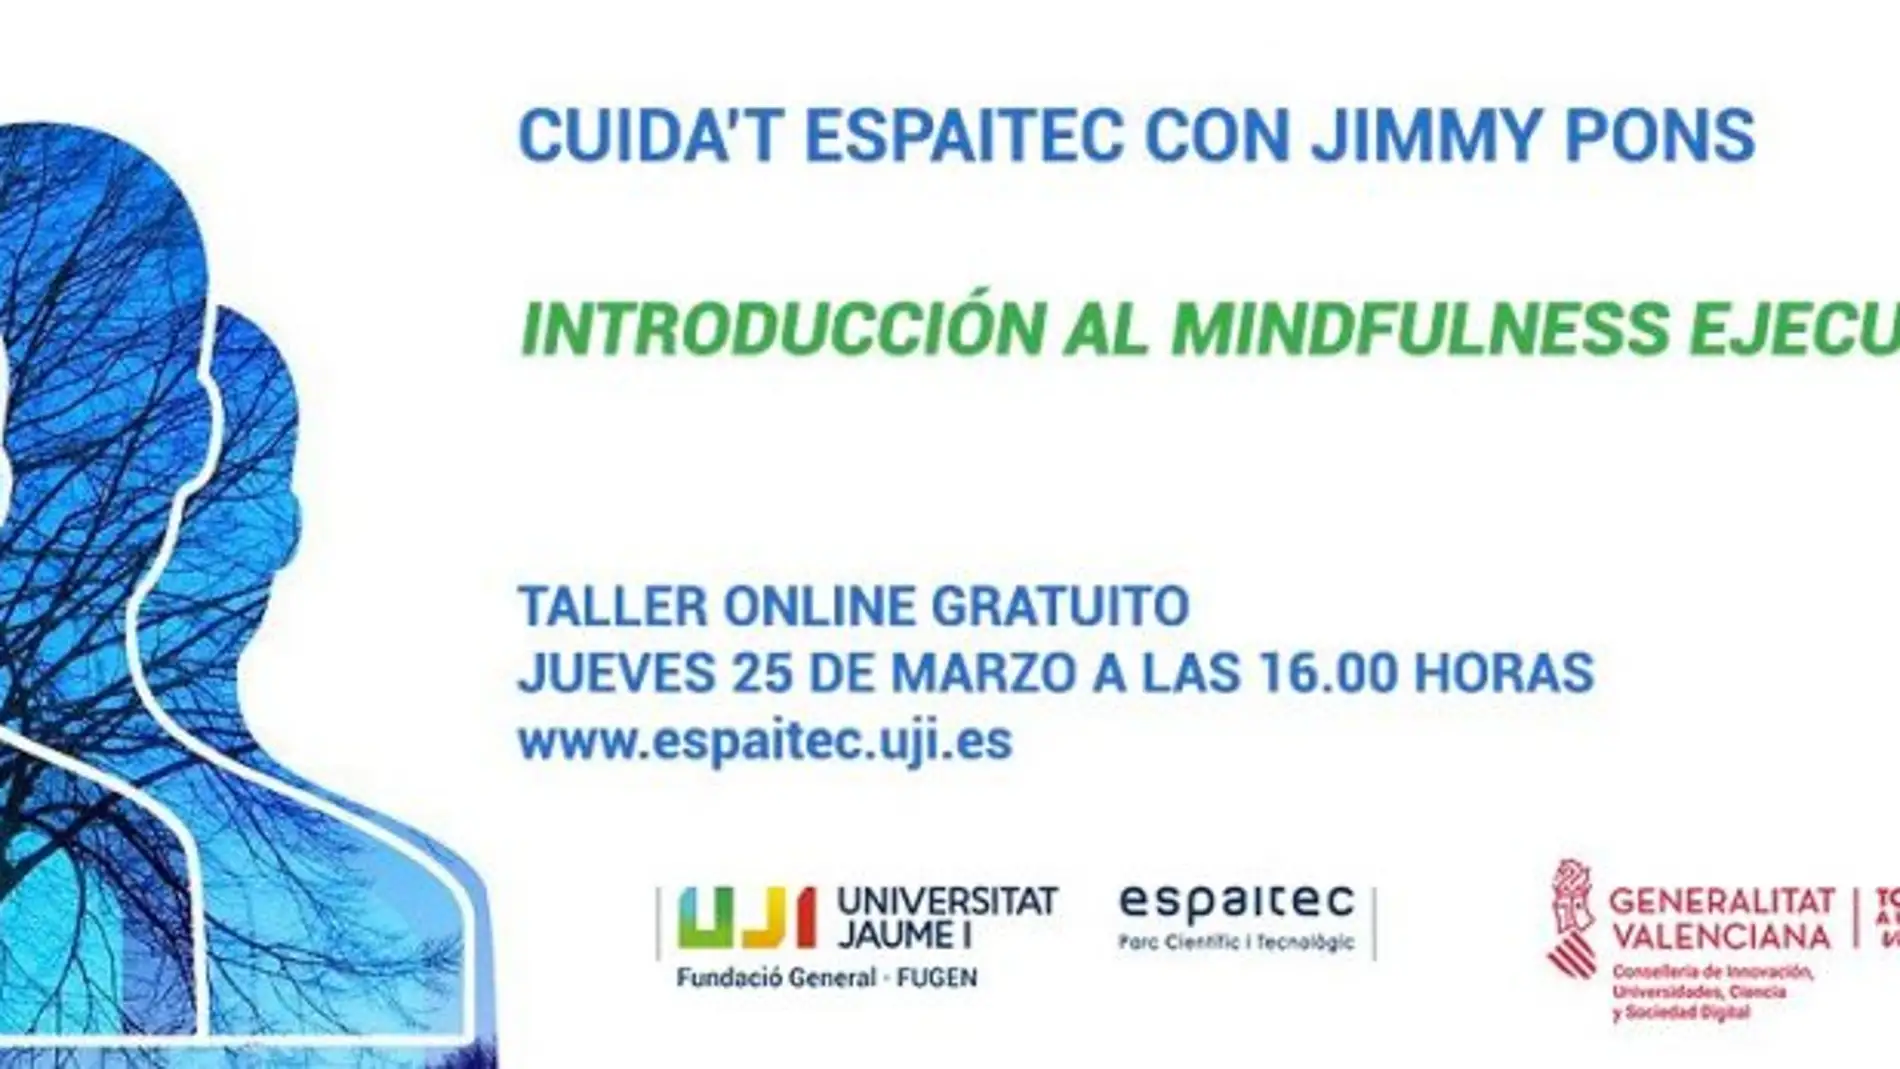 Cuida't Espaitec continúa su ciclo con un taller online dedicado al mindfulness ejecutivo